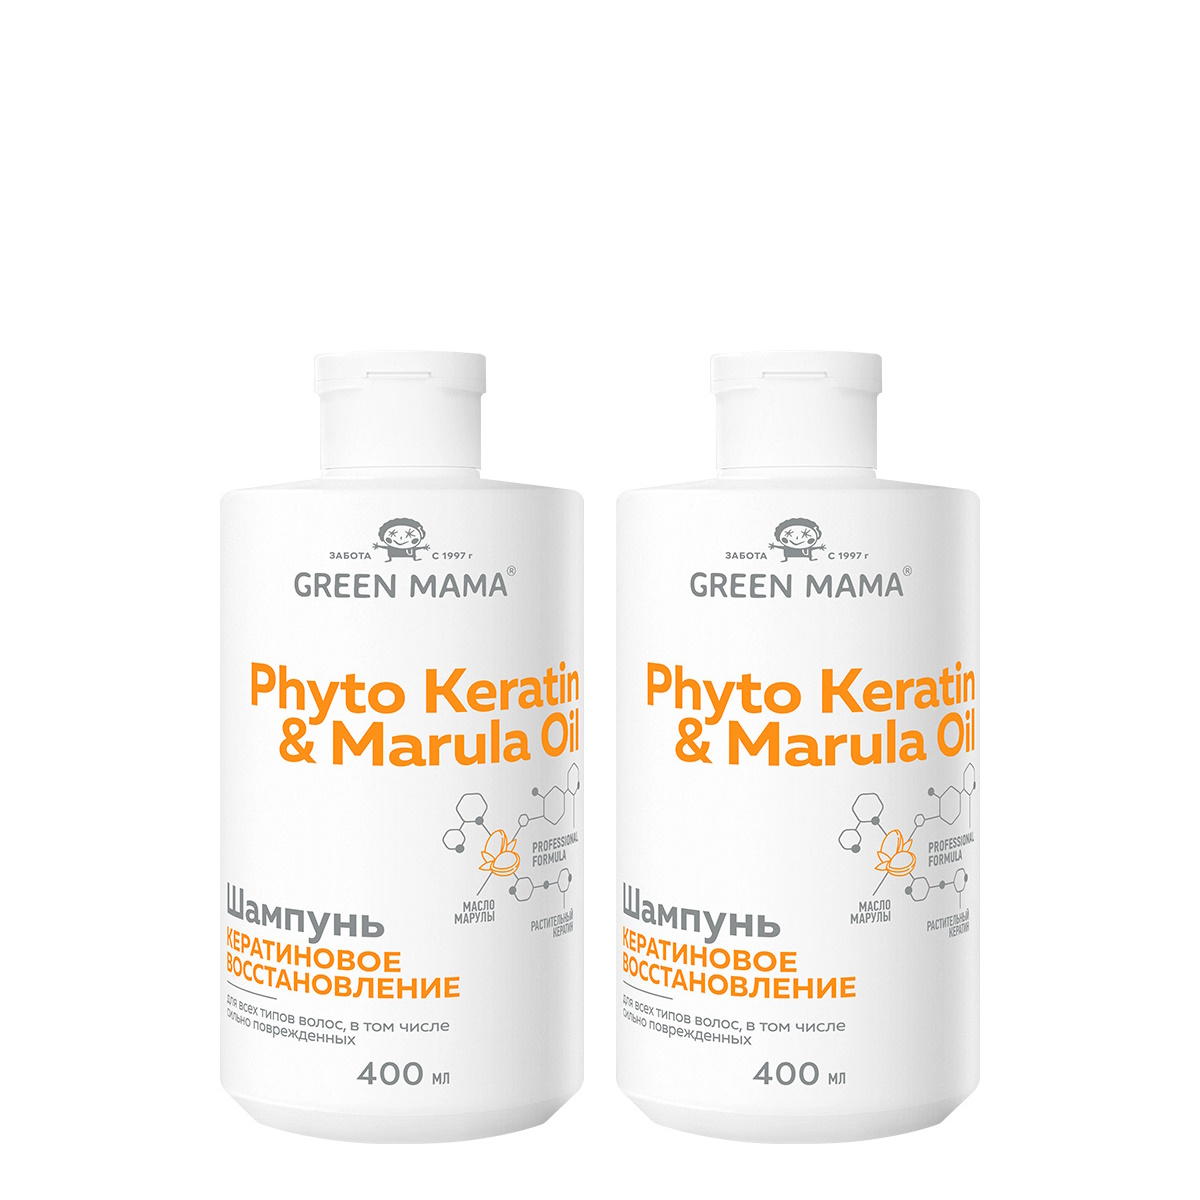 Шампунь для восстановления волос Green Mama Phyto Keratin & Marula Oil 400 мл 2 шт путешествия с тетушкой комедианты грин г